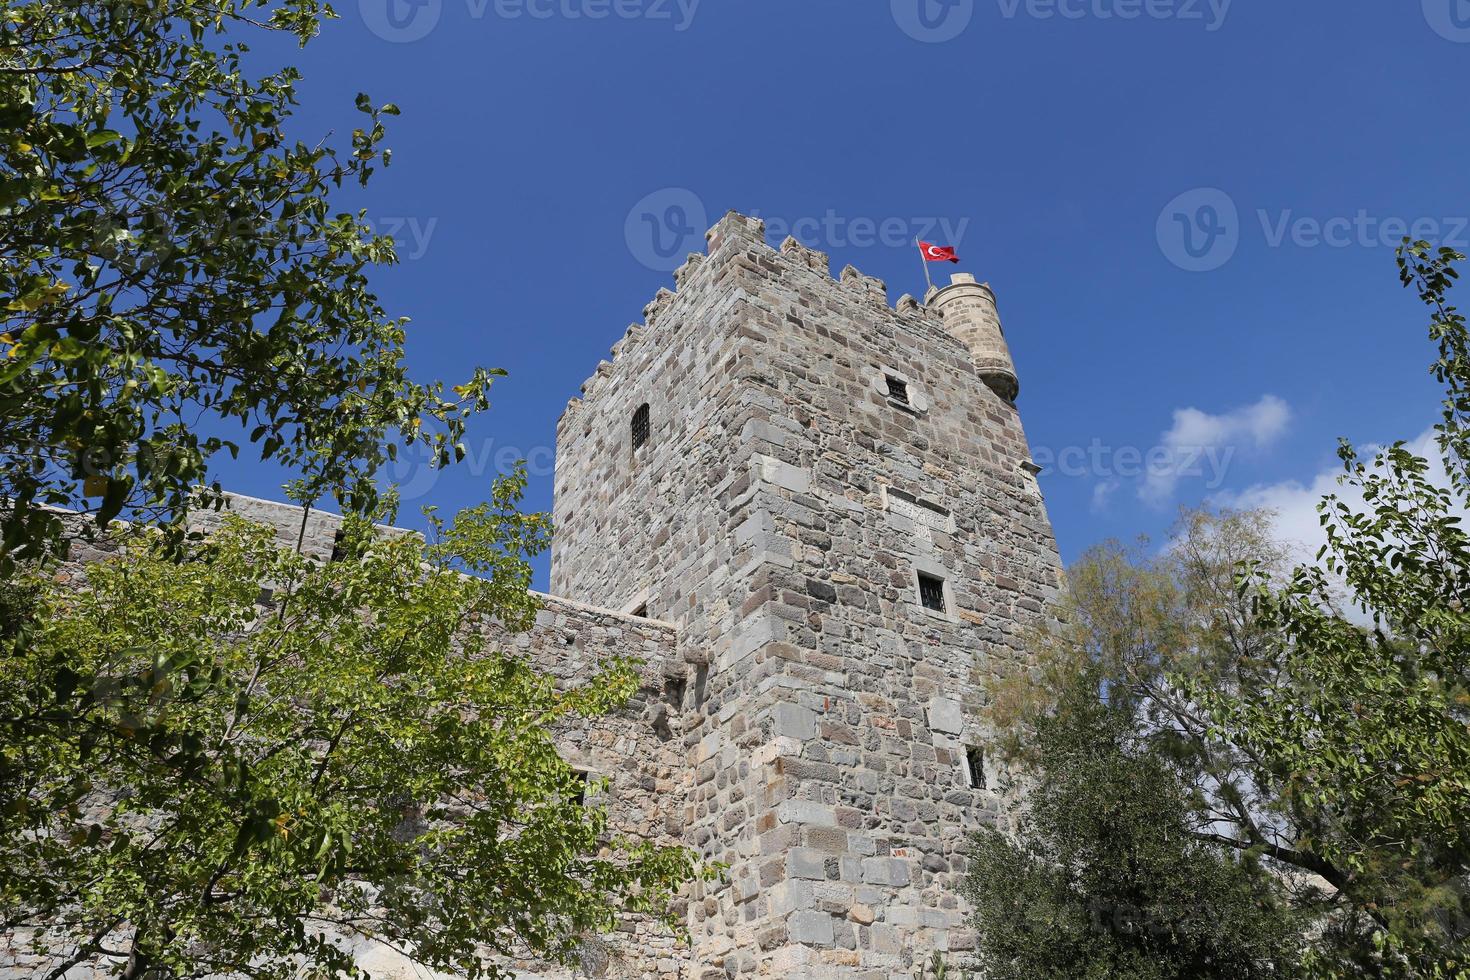 Bodrum Castle in Turkey photo